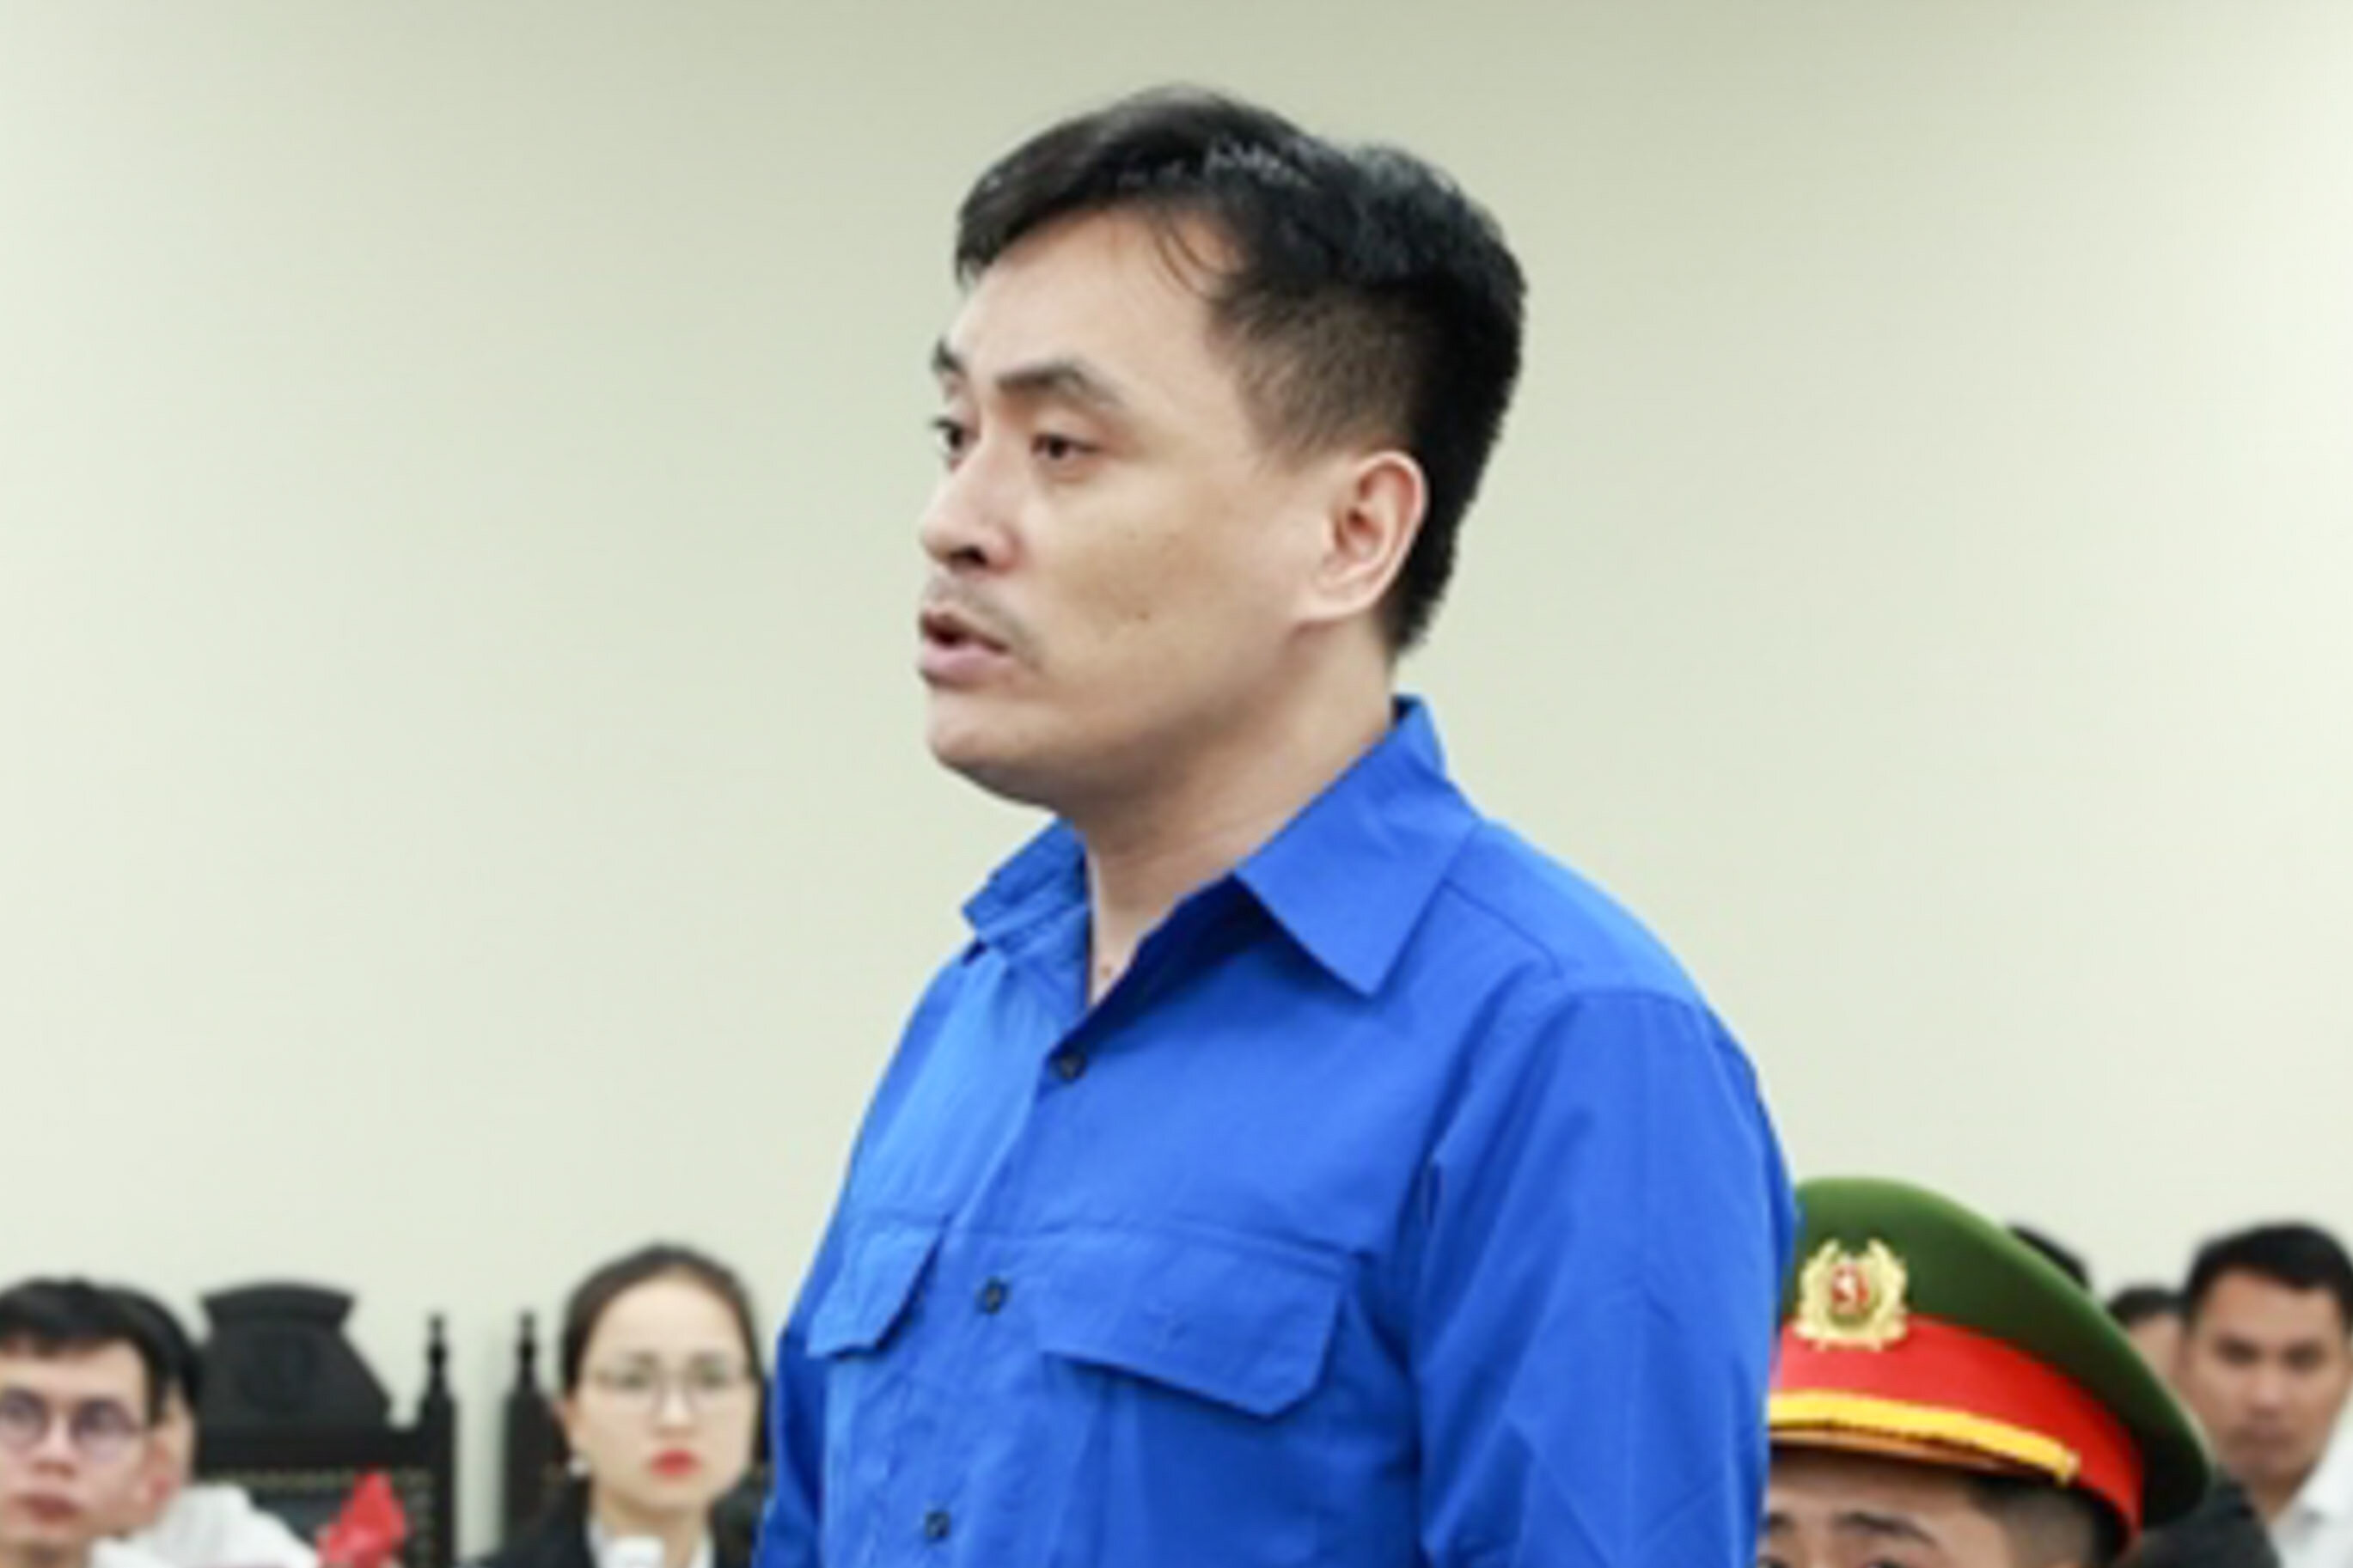 VKS khẳng định đủ căn cứ kết luận ông Trần Hùng nhận hối lộ 300 triệu đồng - 2